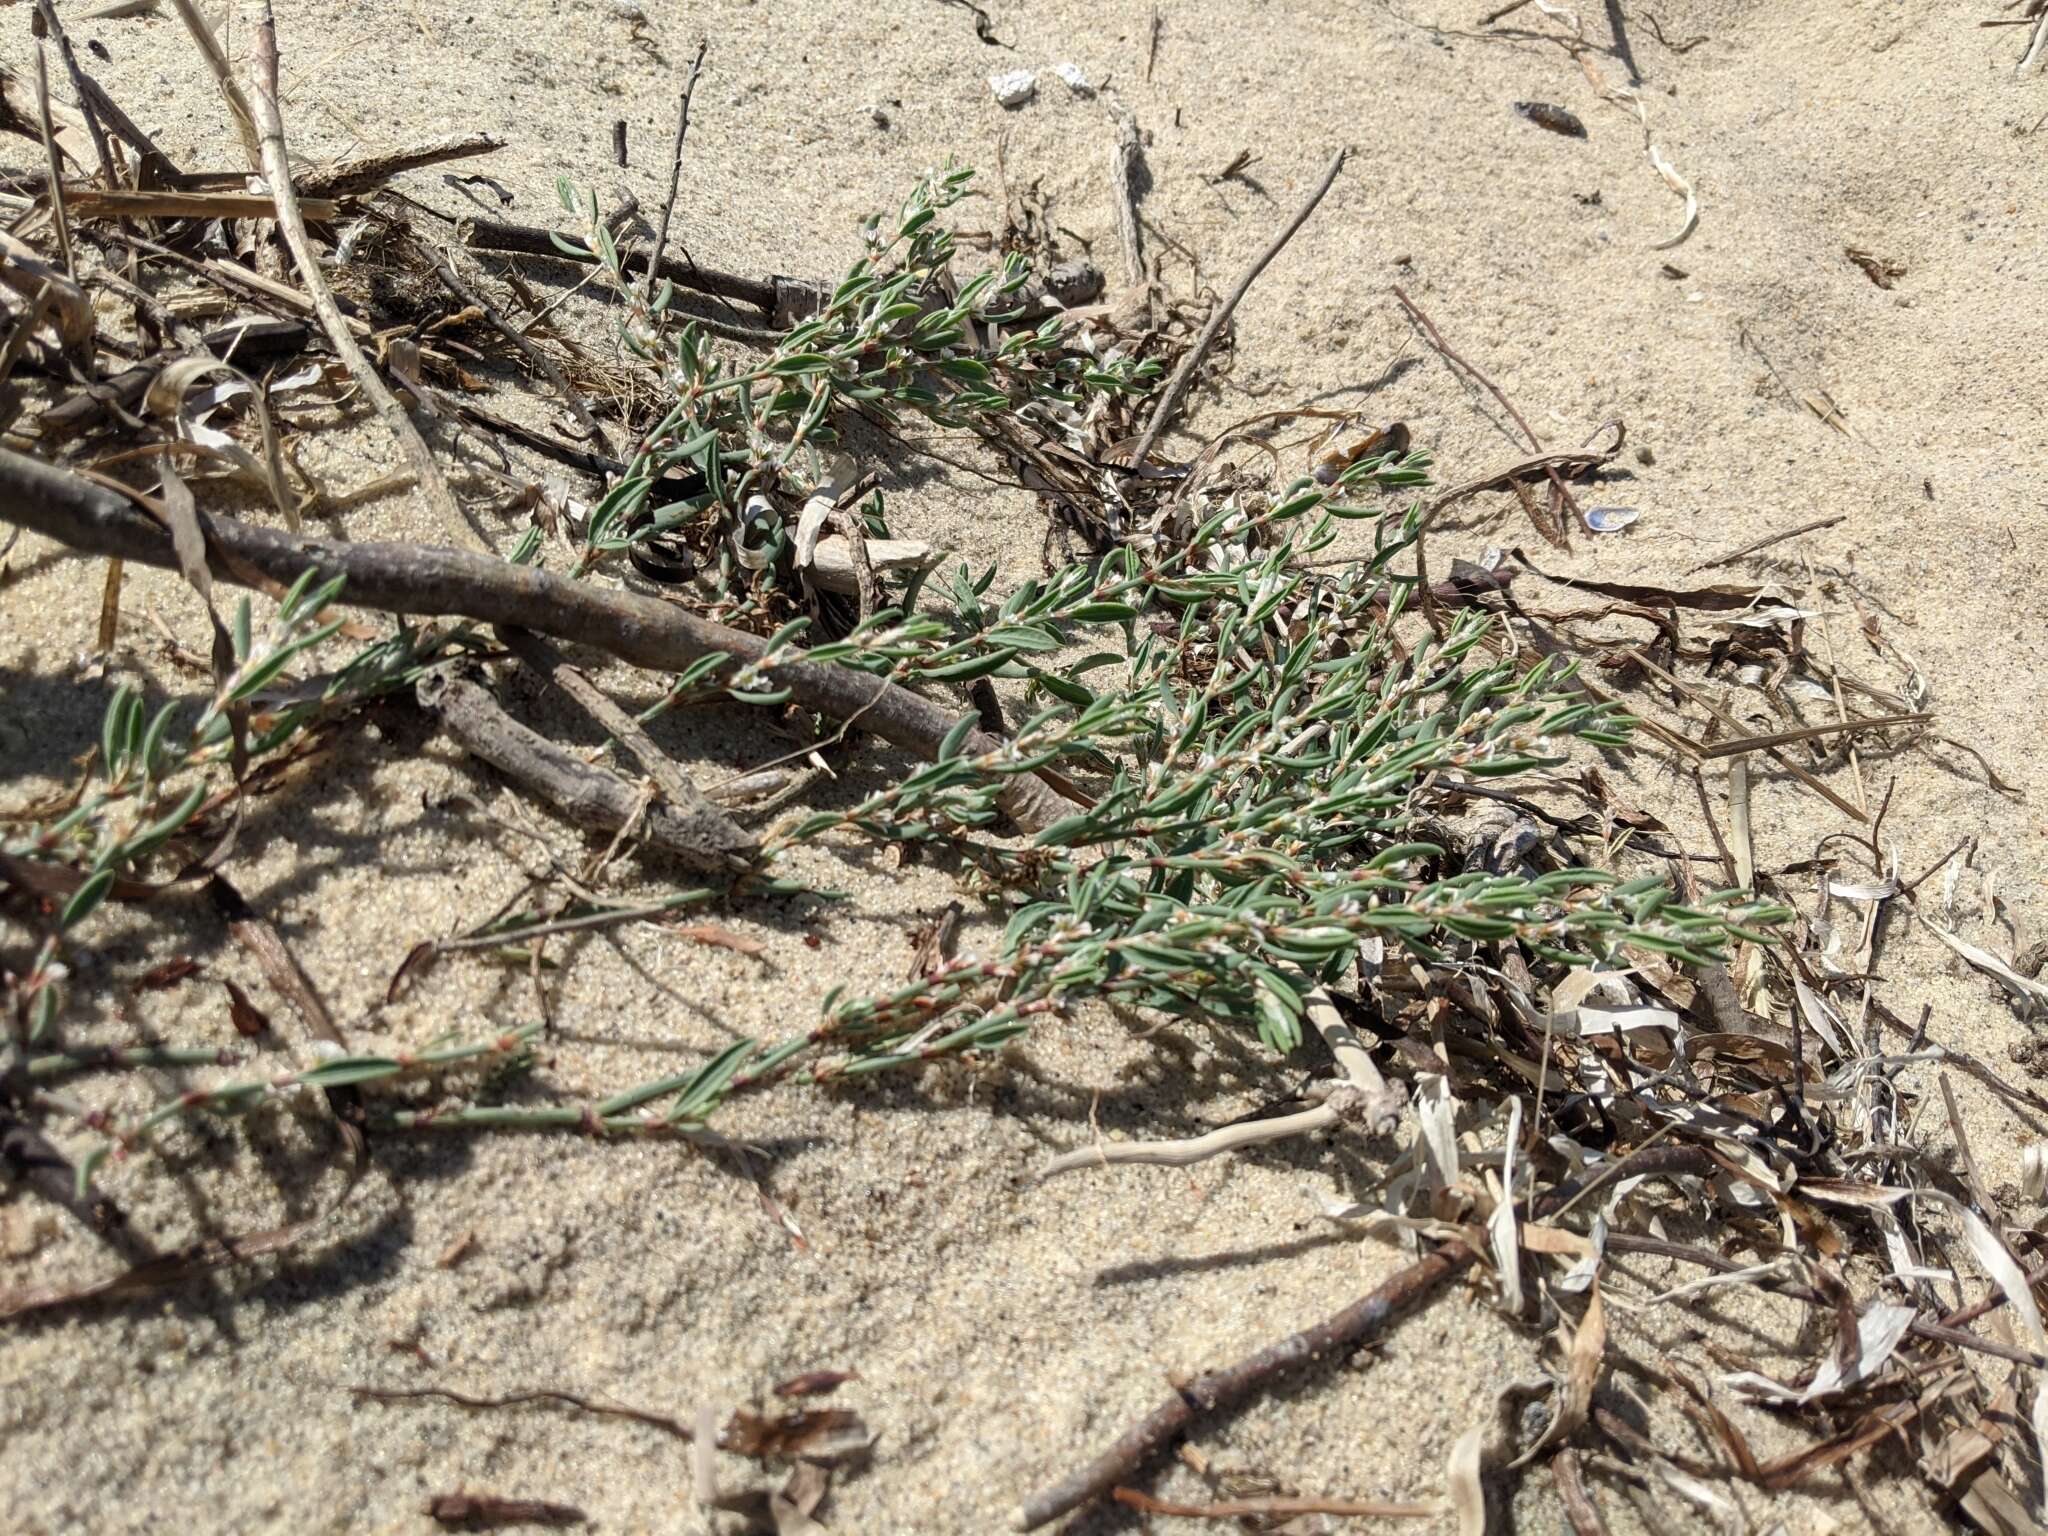 Image of seaside knotweed